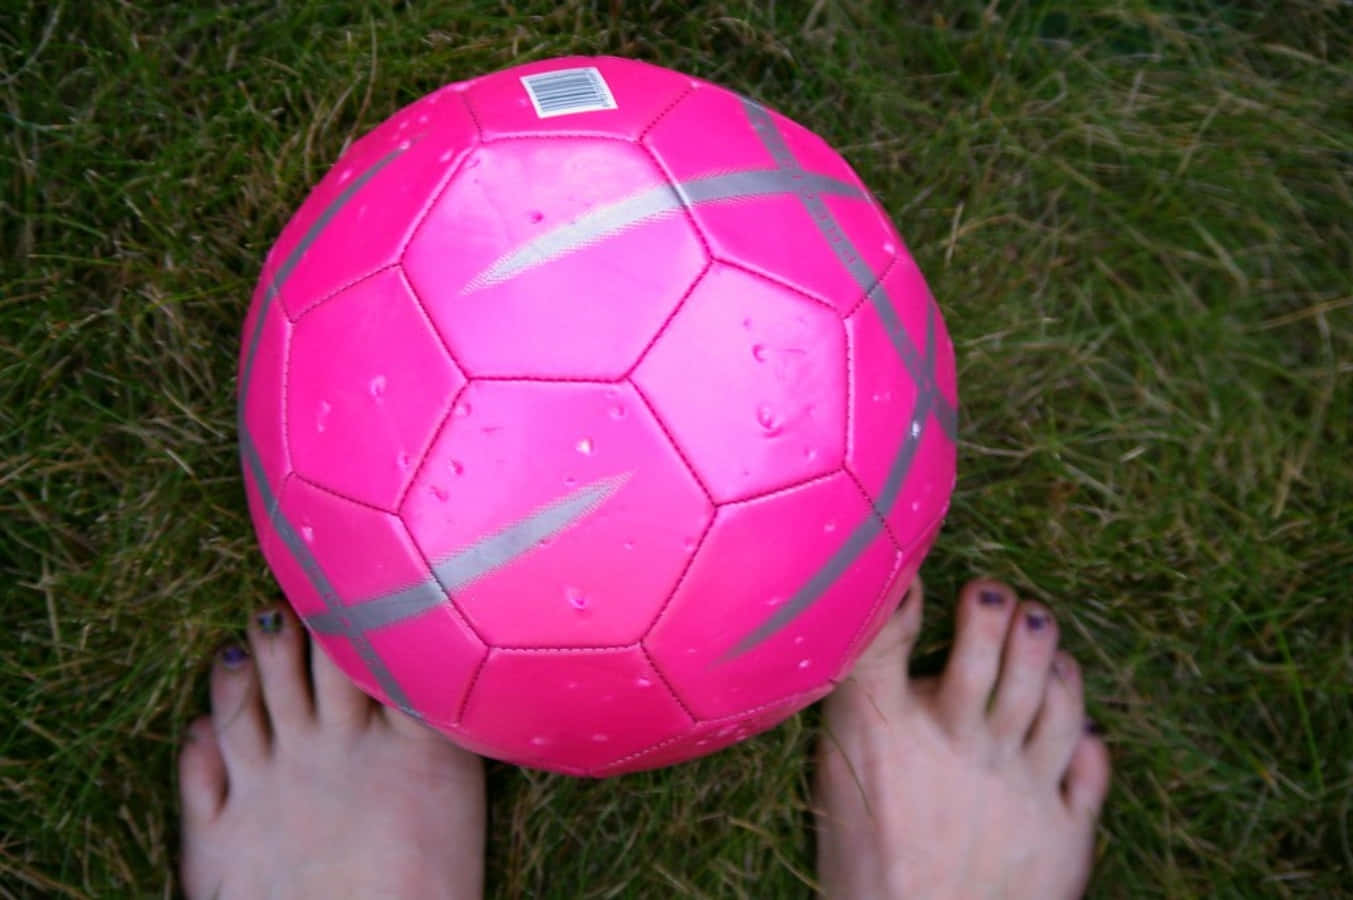 A bright pink soccer ball on a grass field Wallpaper